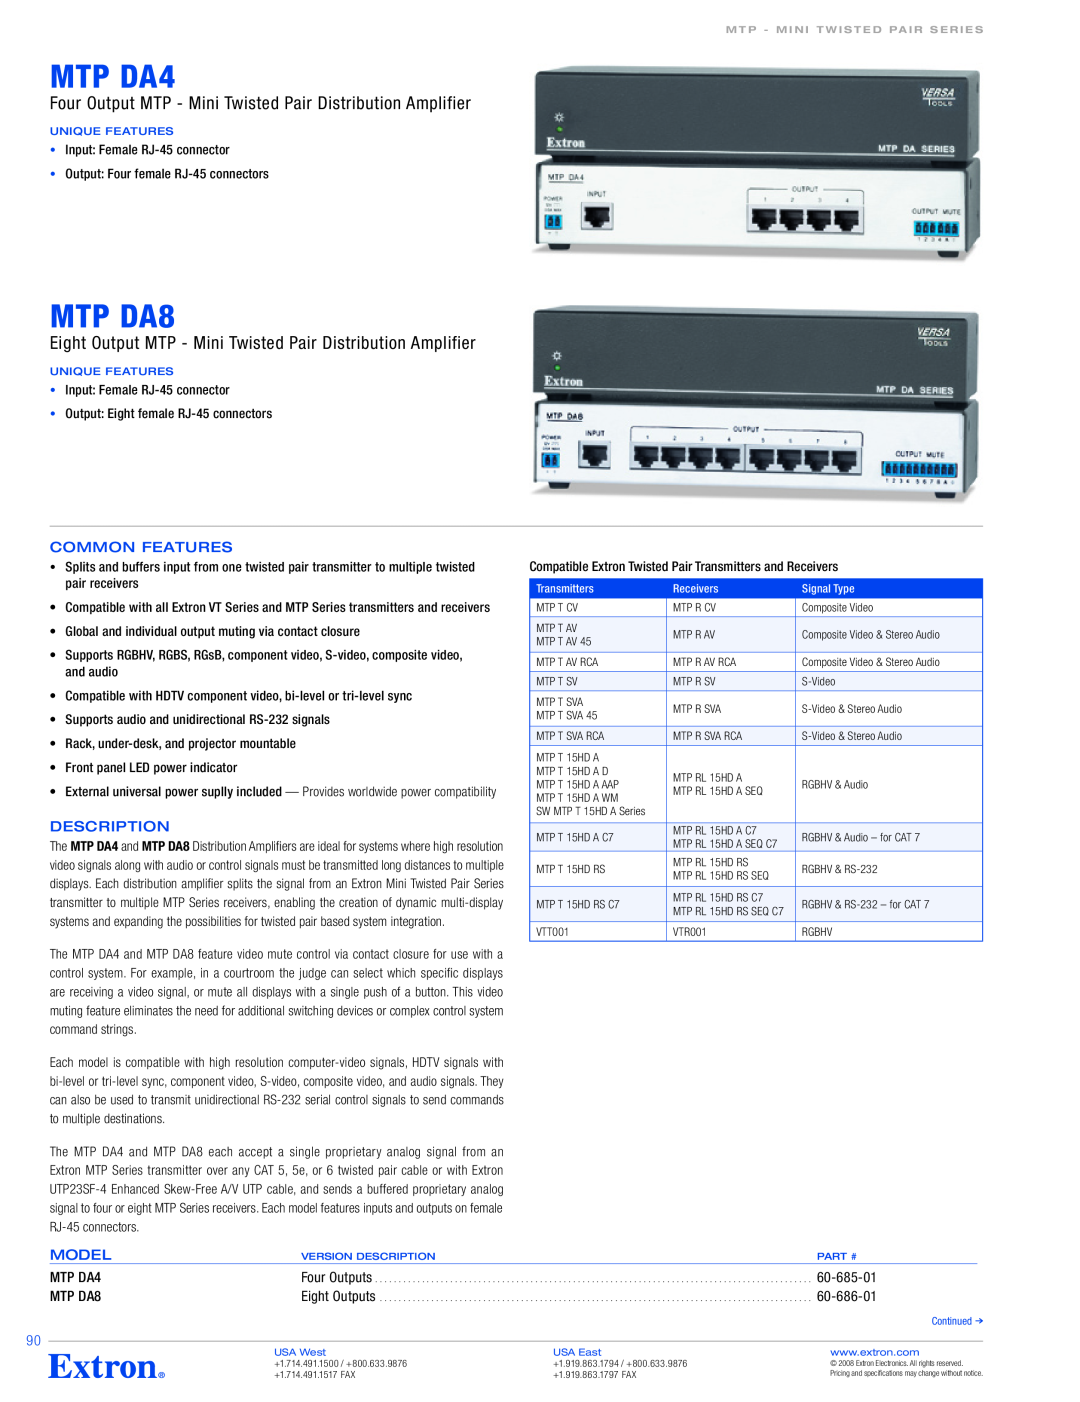 Extron electronic MTP DA84, MTP DAA4 specifications Common Features, Description, Model, MTP DA4, 60-685-01, 60-686-01 